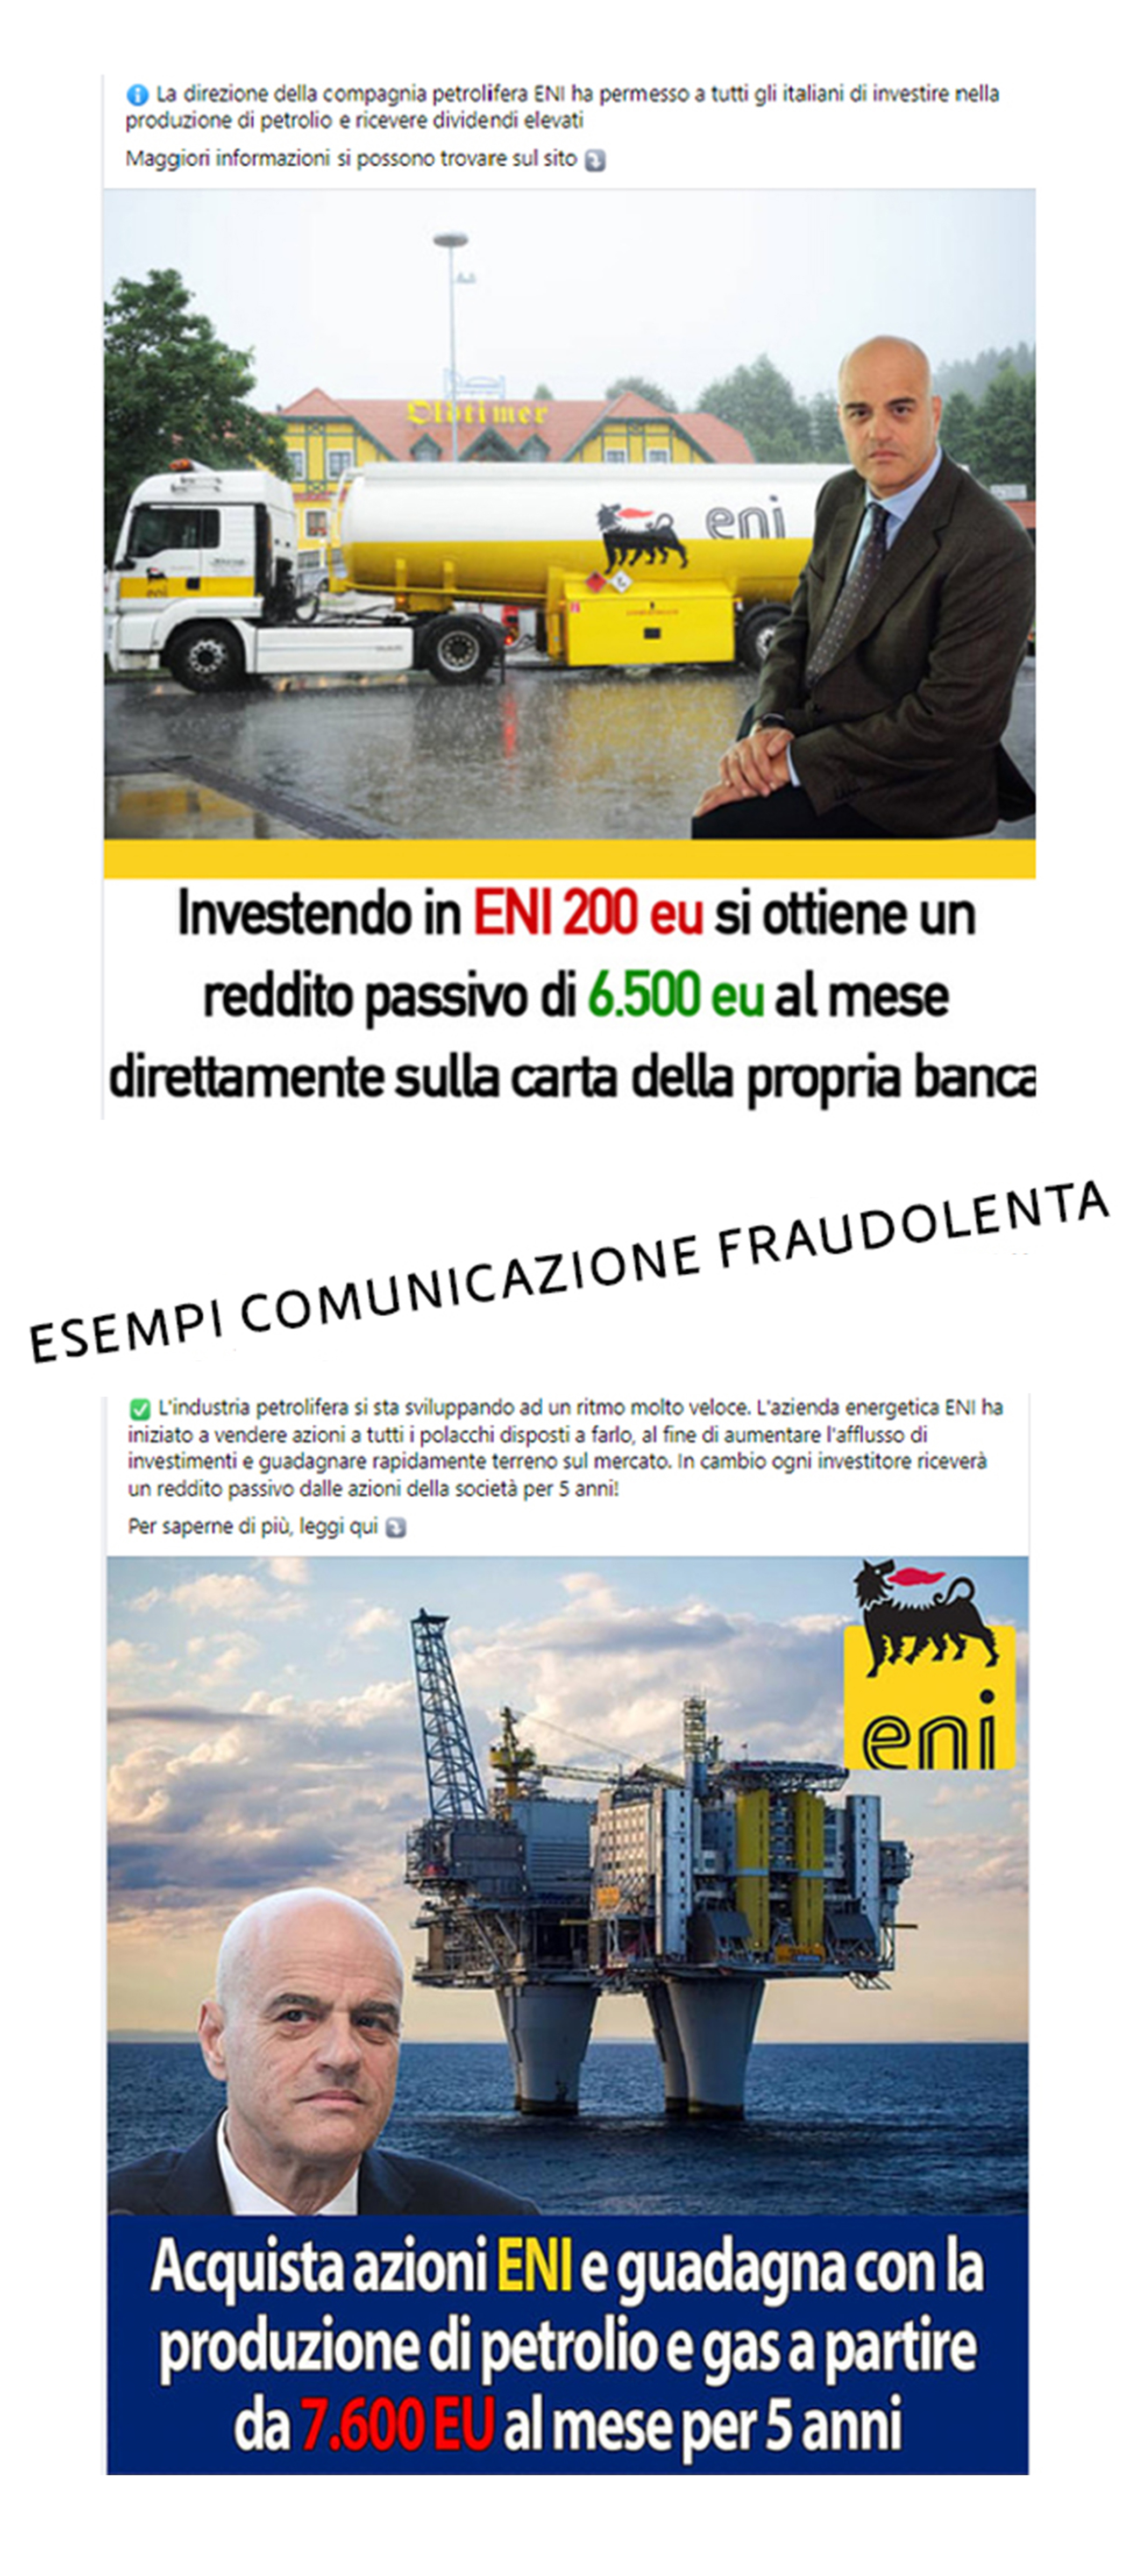 es-comunicazione-fraudolenta-mobile-ita-05.jpg